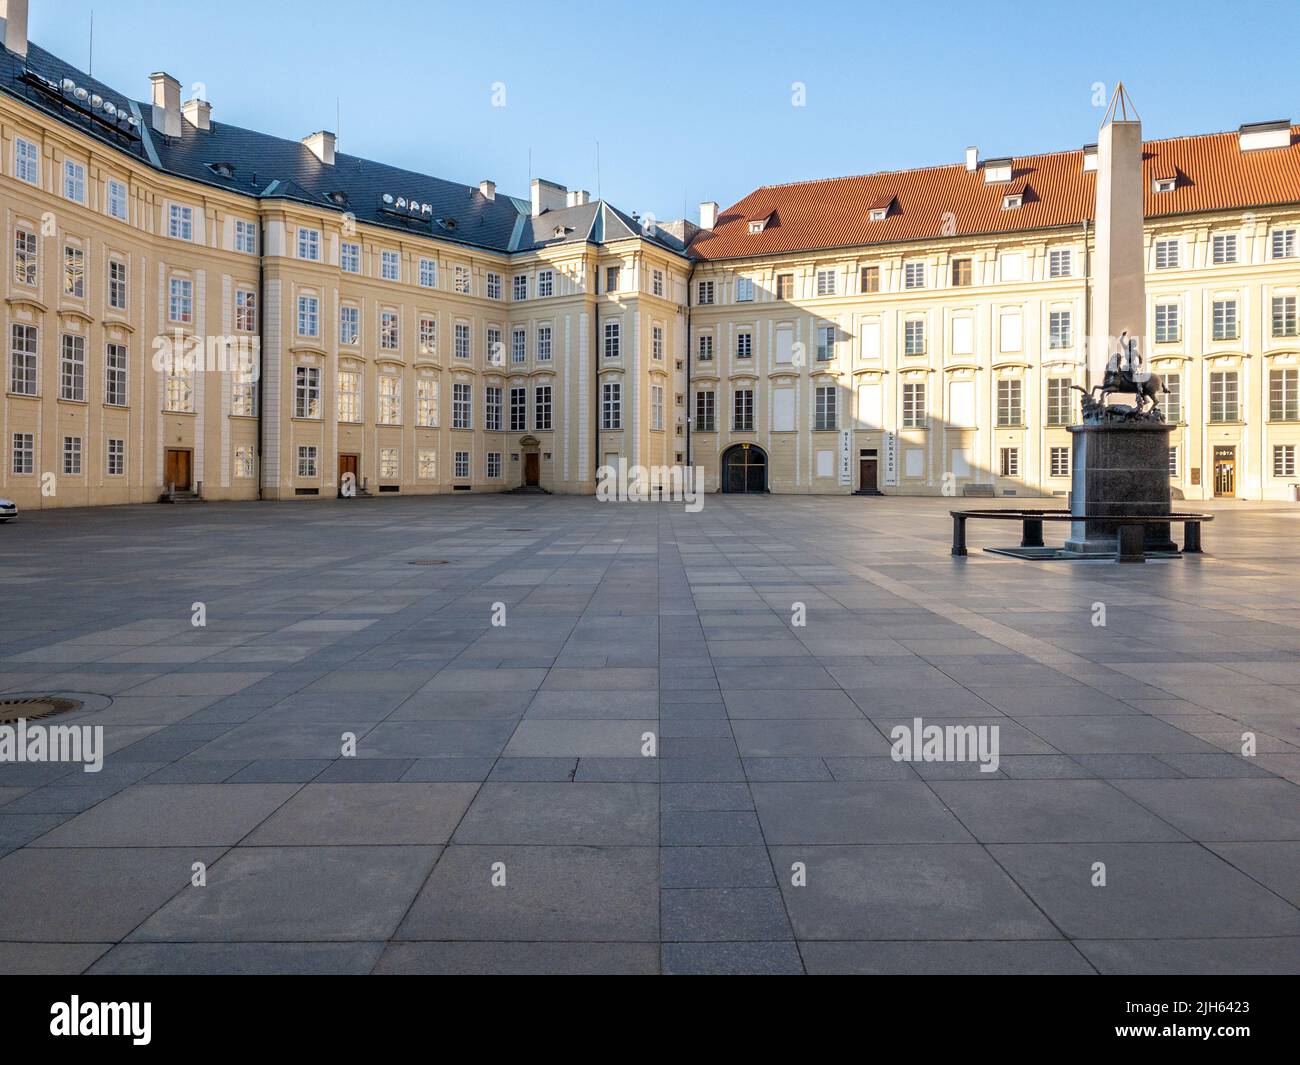 Rues étroites, escaliers et palais merveilleux du château de Prague. Une vue unique sans une foule de touristes sur un merveilleux matin de printemps. Château de Prague Banque D'Images